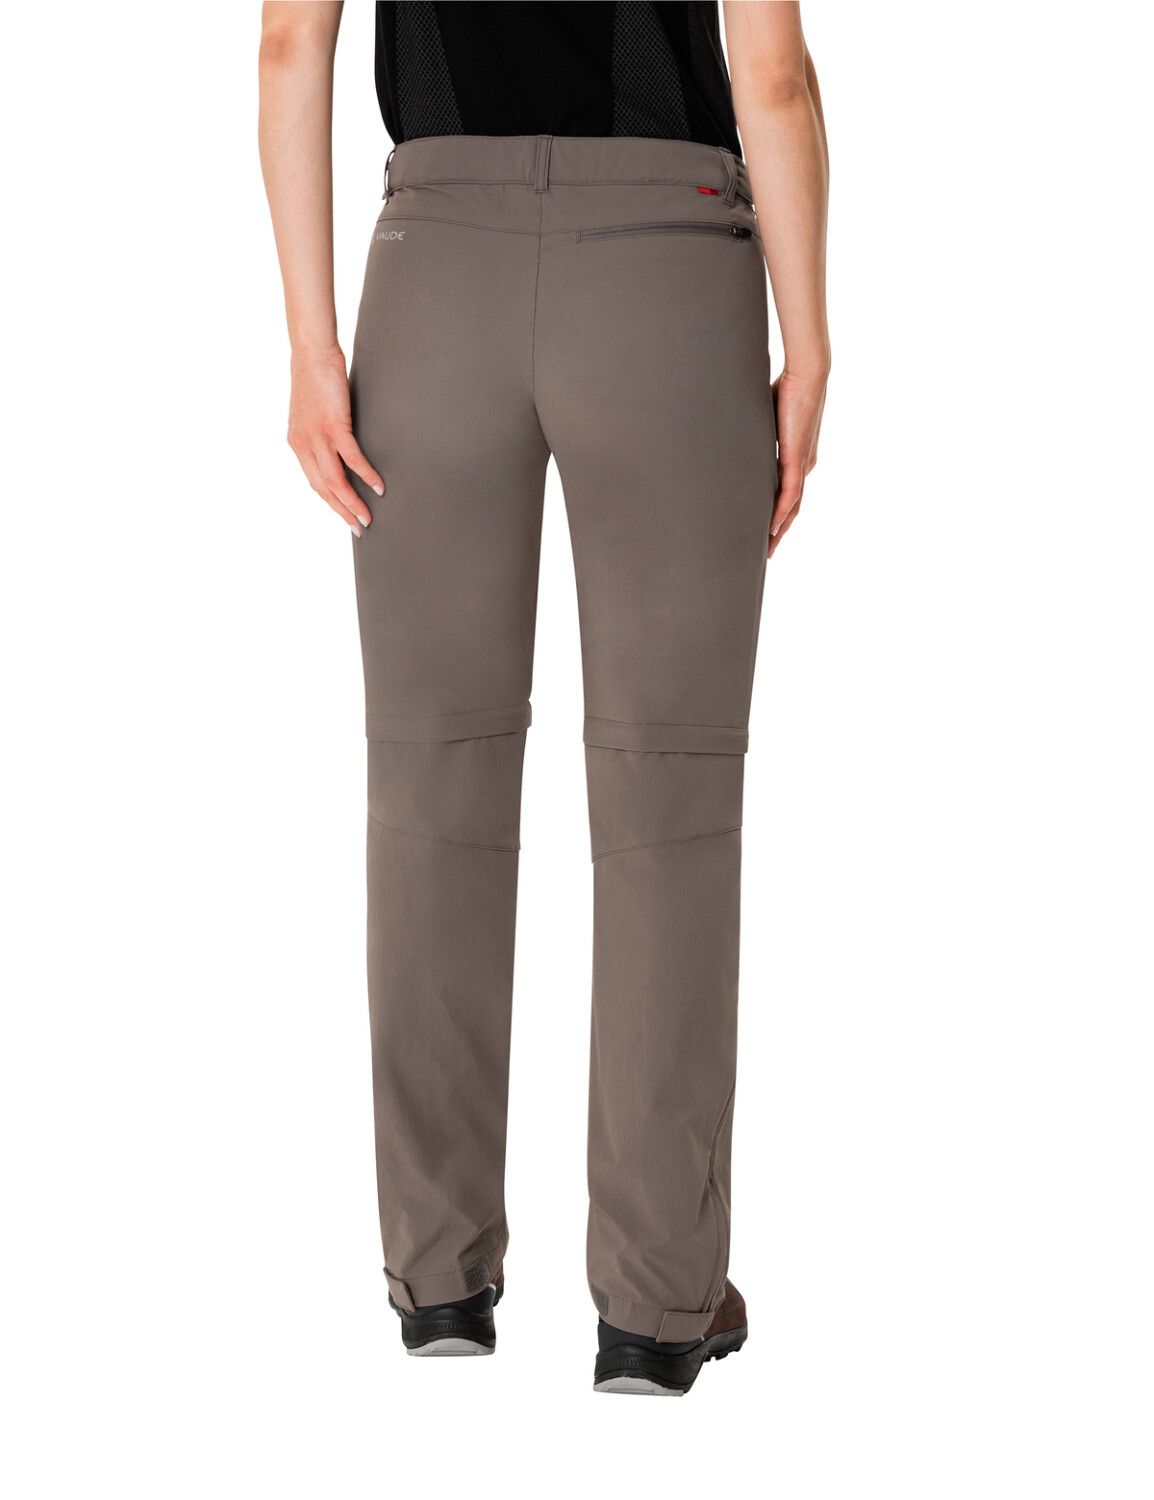 VAUDE Women's Farley Stretch ZO T-Zip Pants (Bild 13)